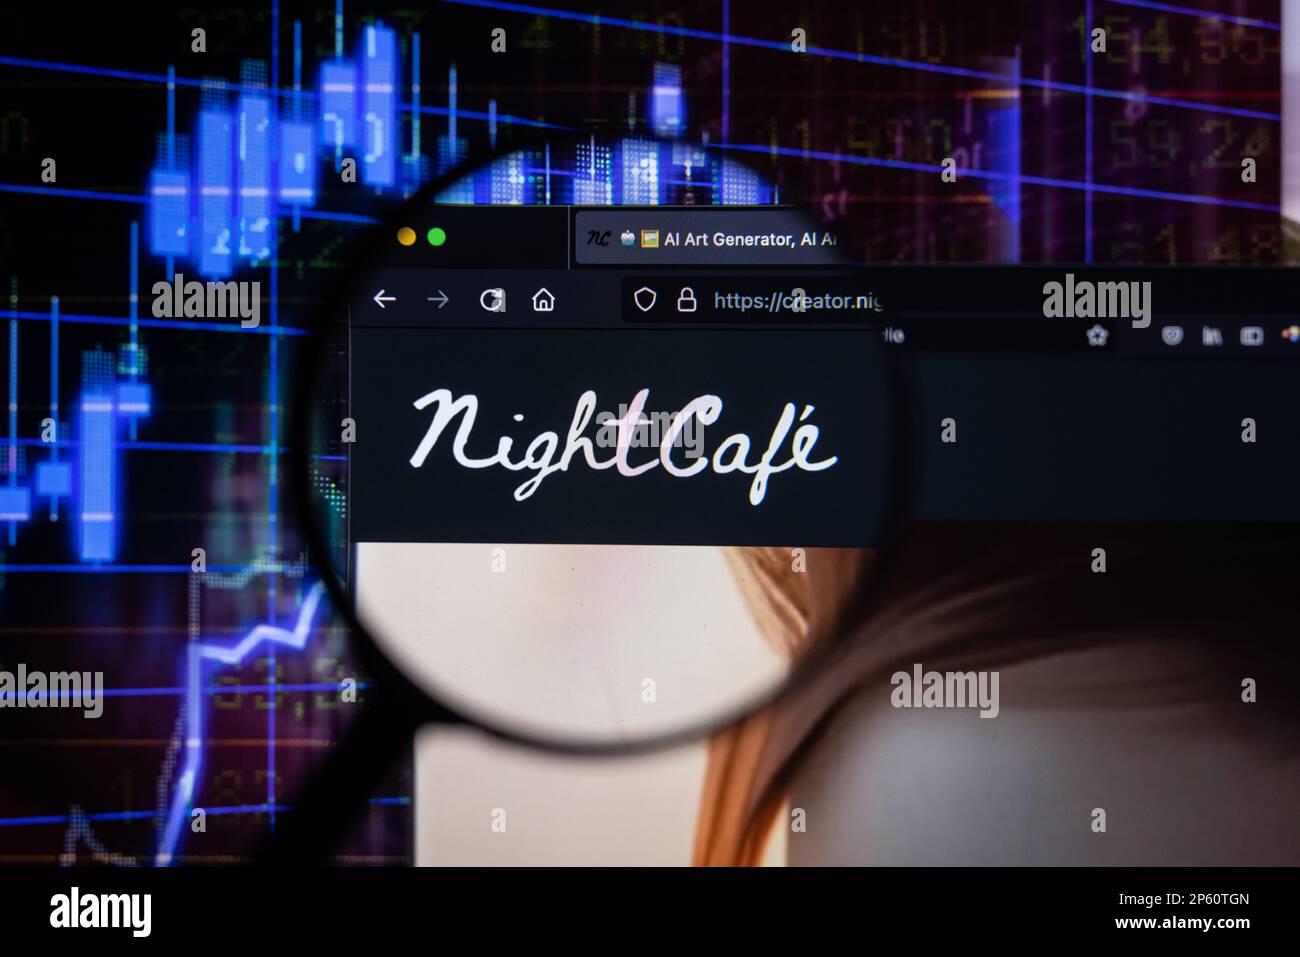 Logo aziendale Nightcafe su un sito web con blurry mercato azionario sviluppi in background, visto su uno schermo di un computer attraverso una lente di ingrandimento Foto Stock